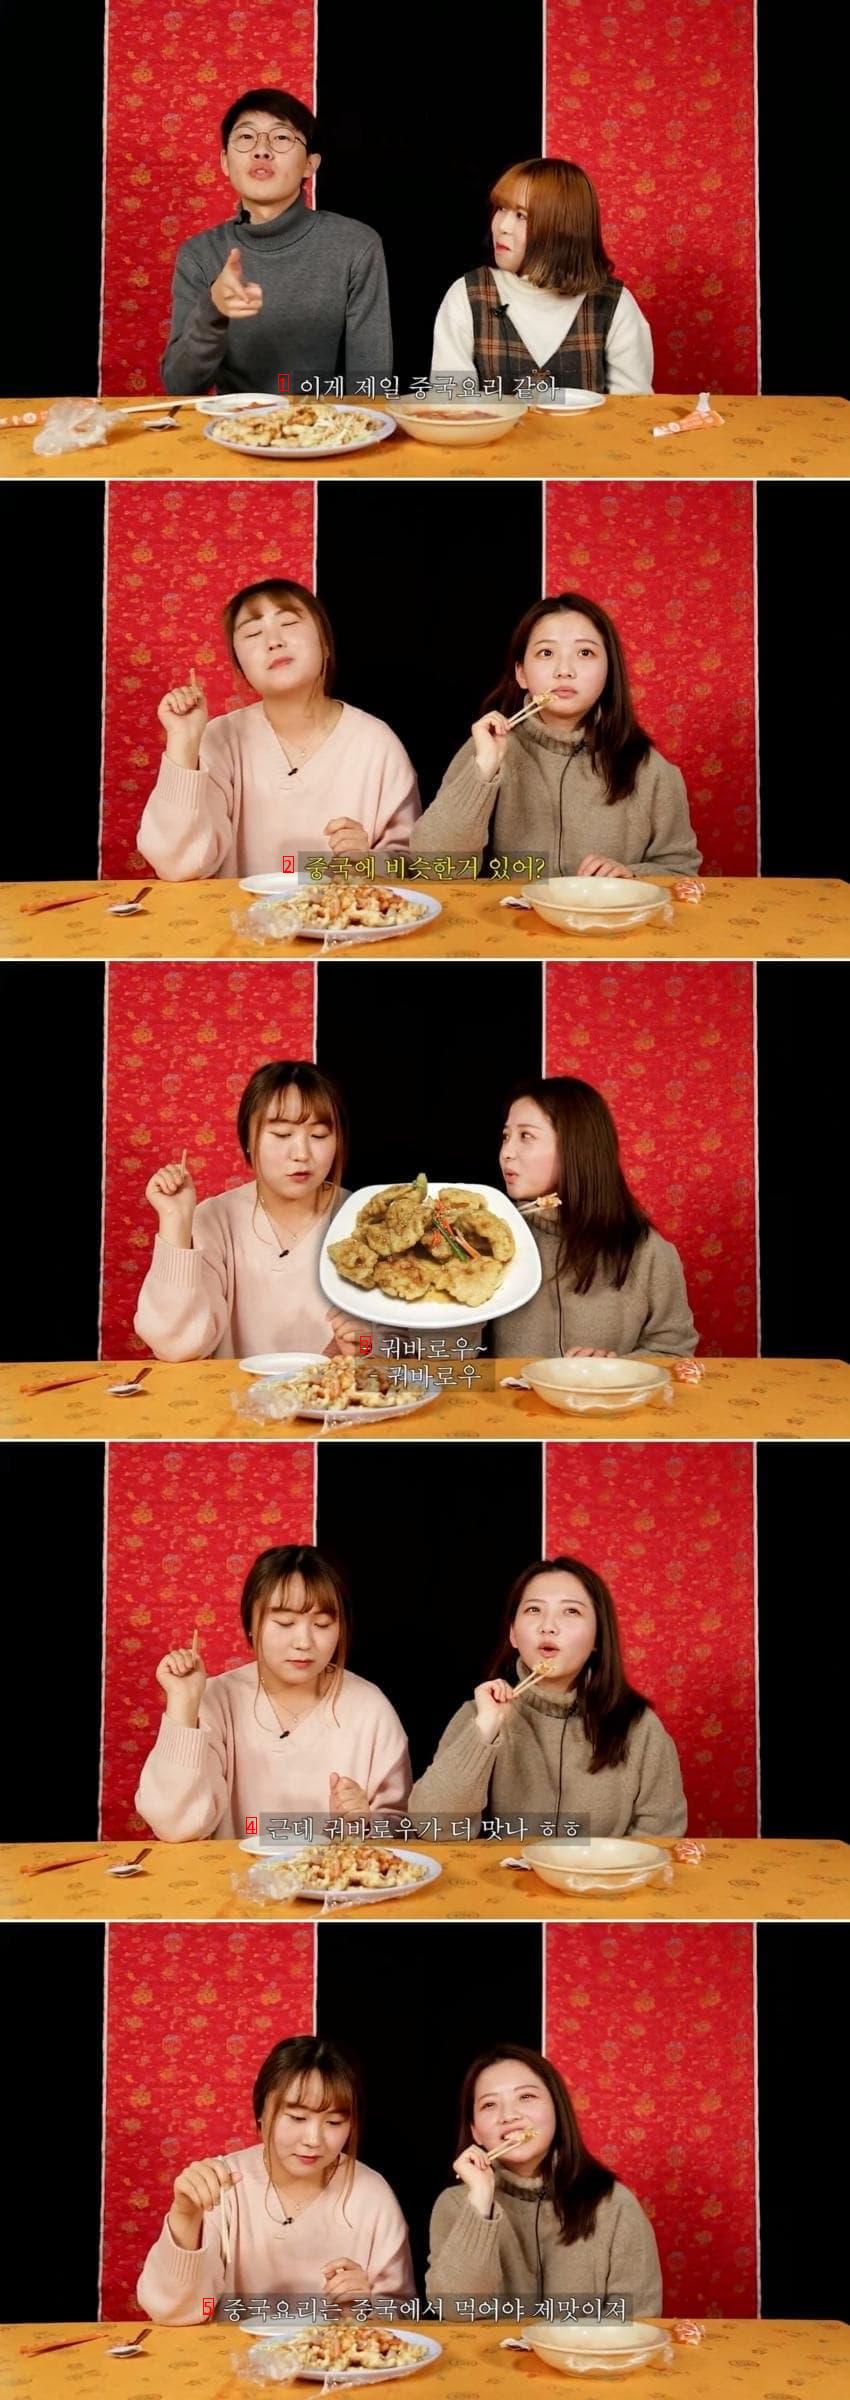 ジャージャー麺、チャンポン、酢豚を食べたことのある中国人の反応jpg